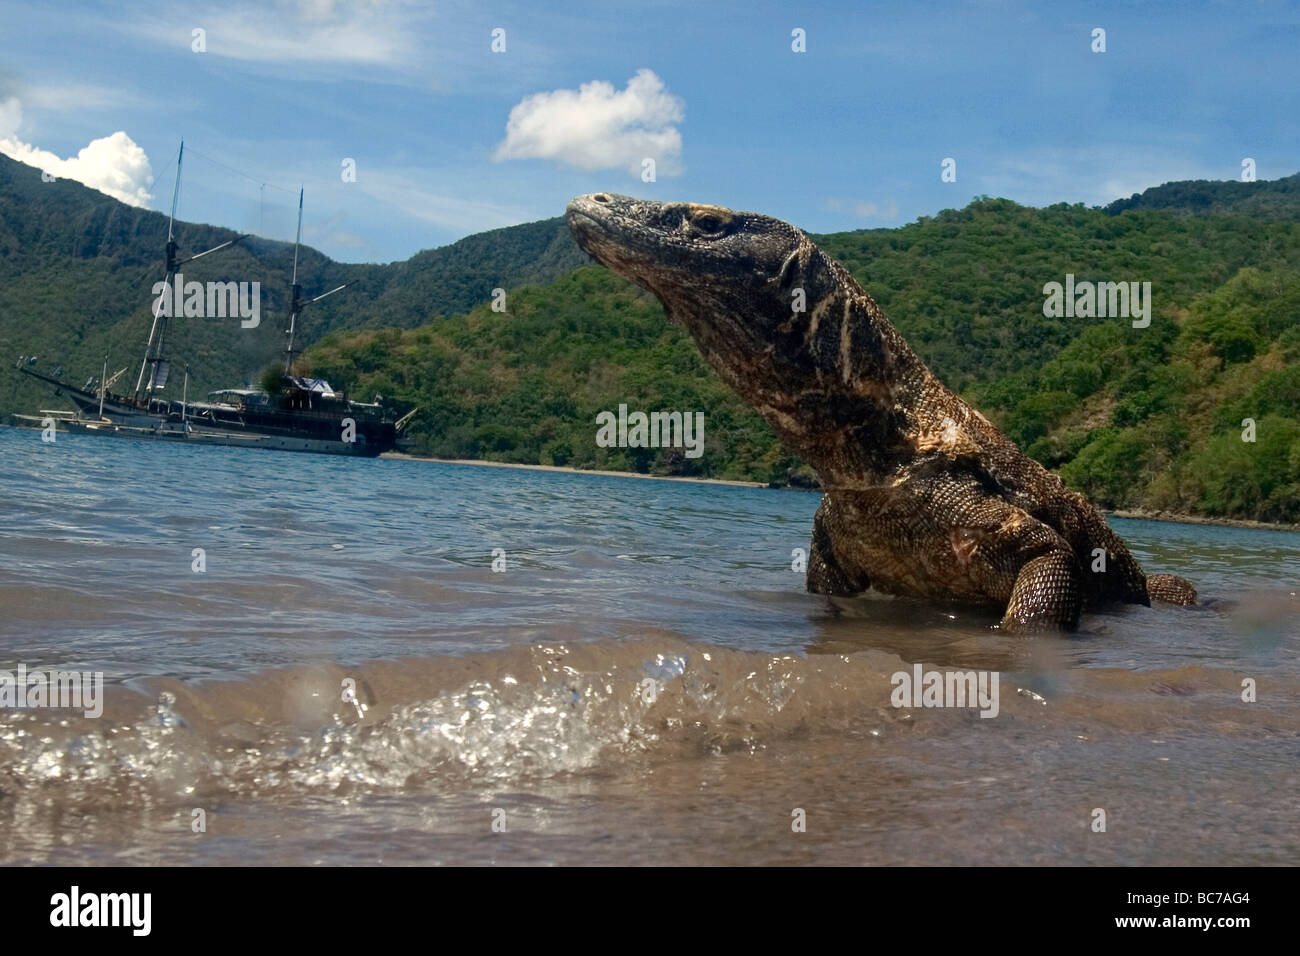 Dragon de Komodo, Varanus komodoensis, couché dans l'eau sur la plage. L'île de Komodo également moniteur. Derrière lui, c'est un bateau à voile Banque D'Images